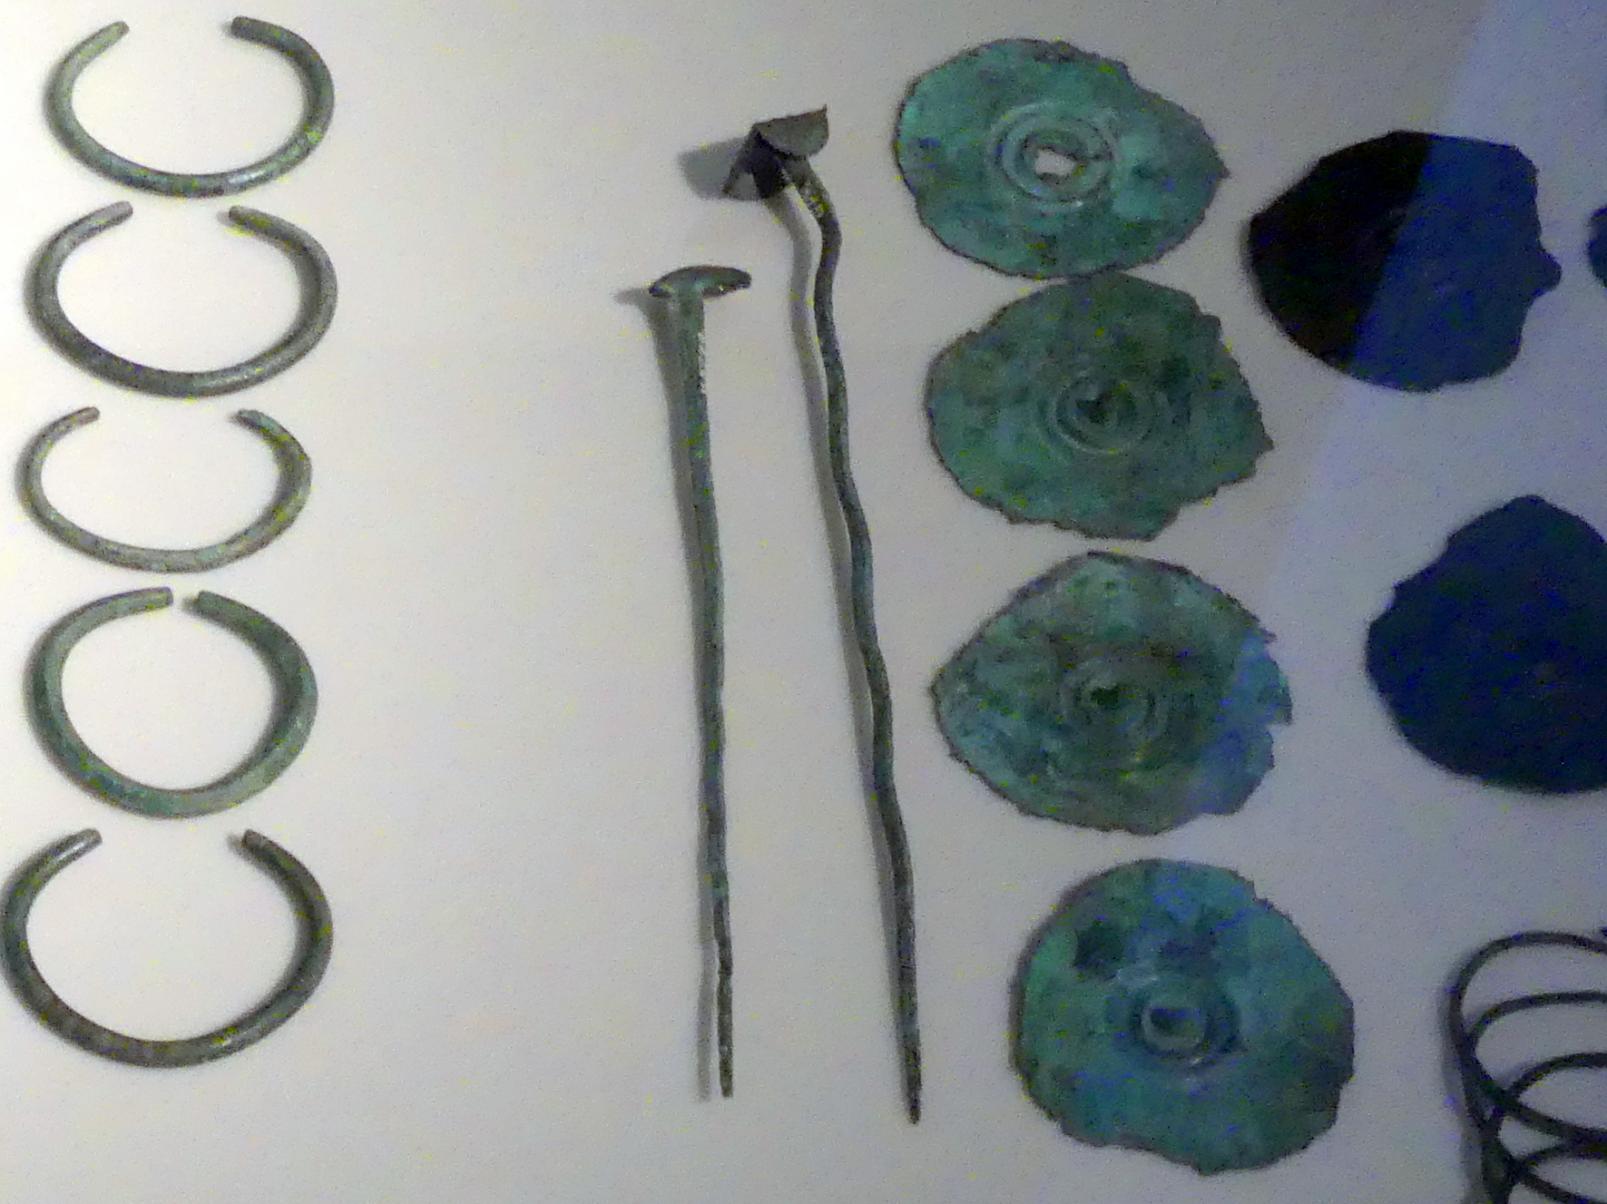 Stachelscheiben (Anhänger), Mittlere Bronzezeit, 3000 - 1300 v. Chr., 1600 - 1300 v. Chr.